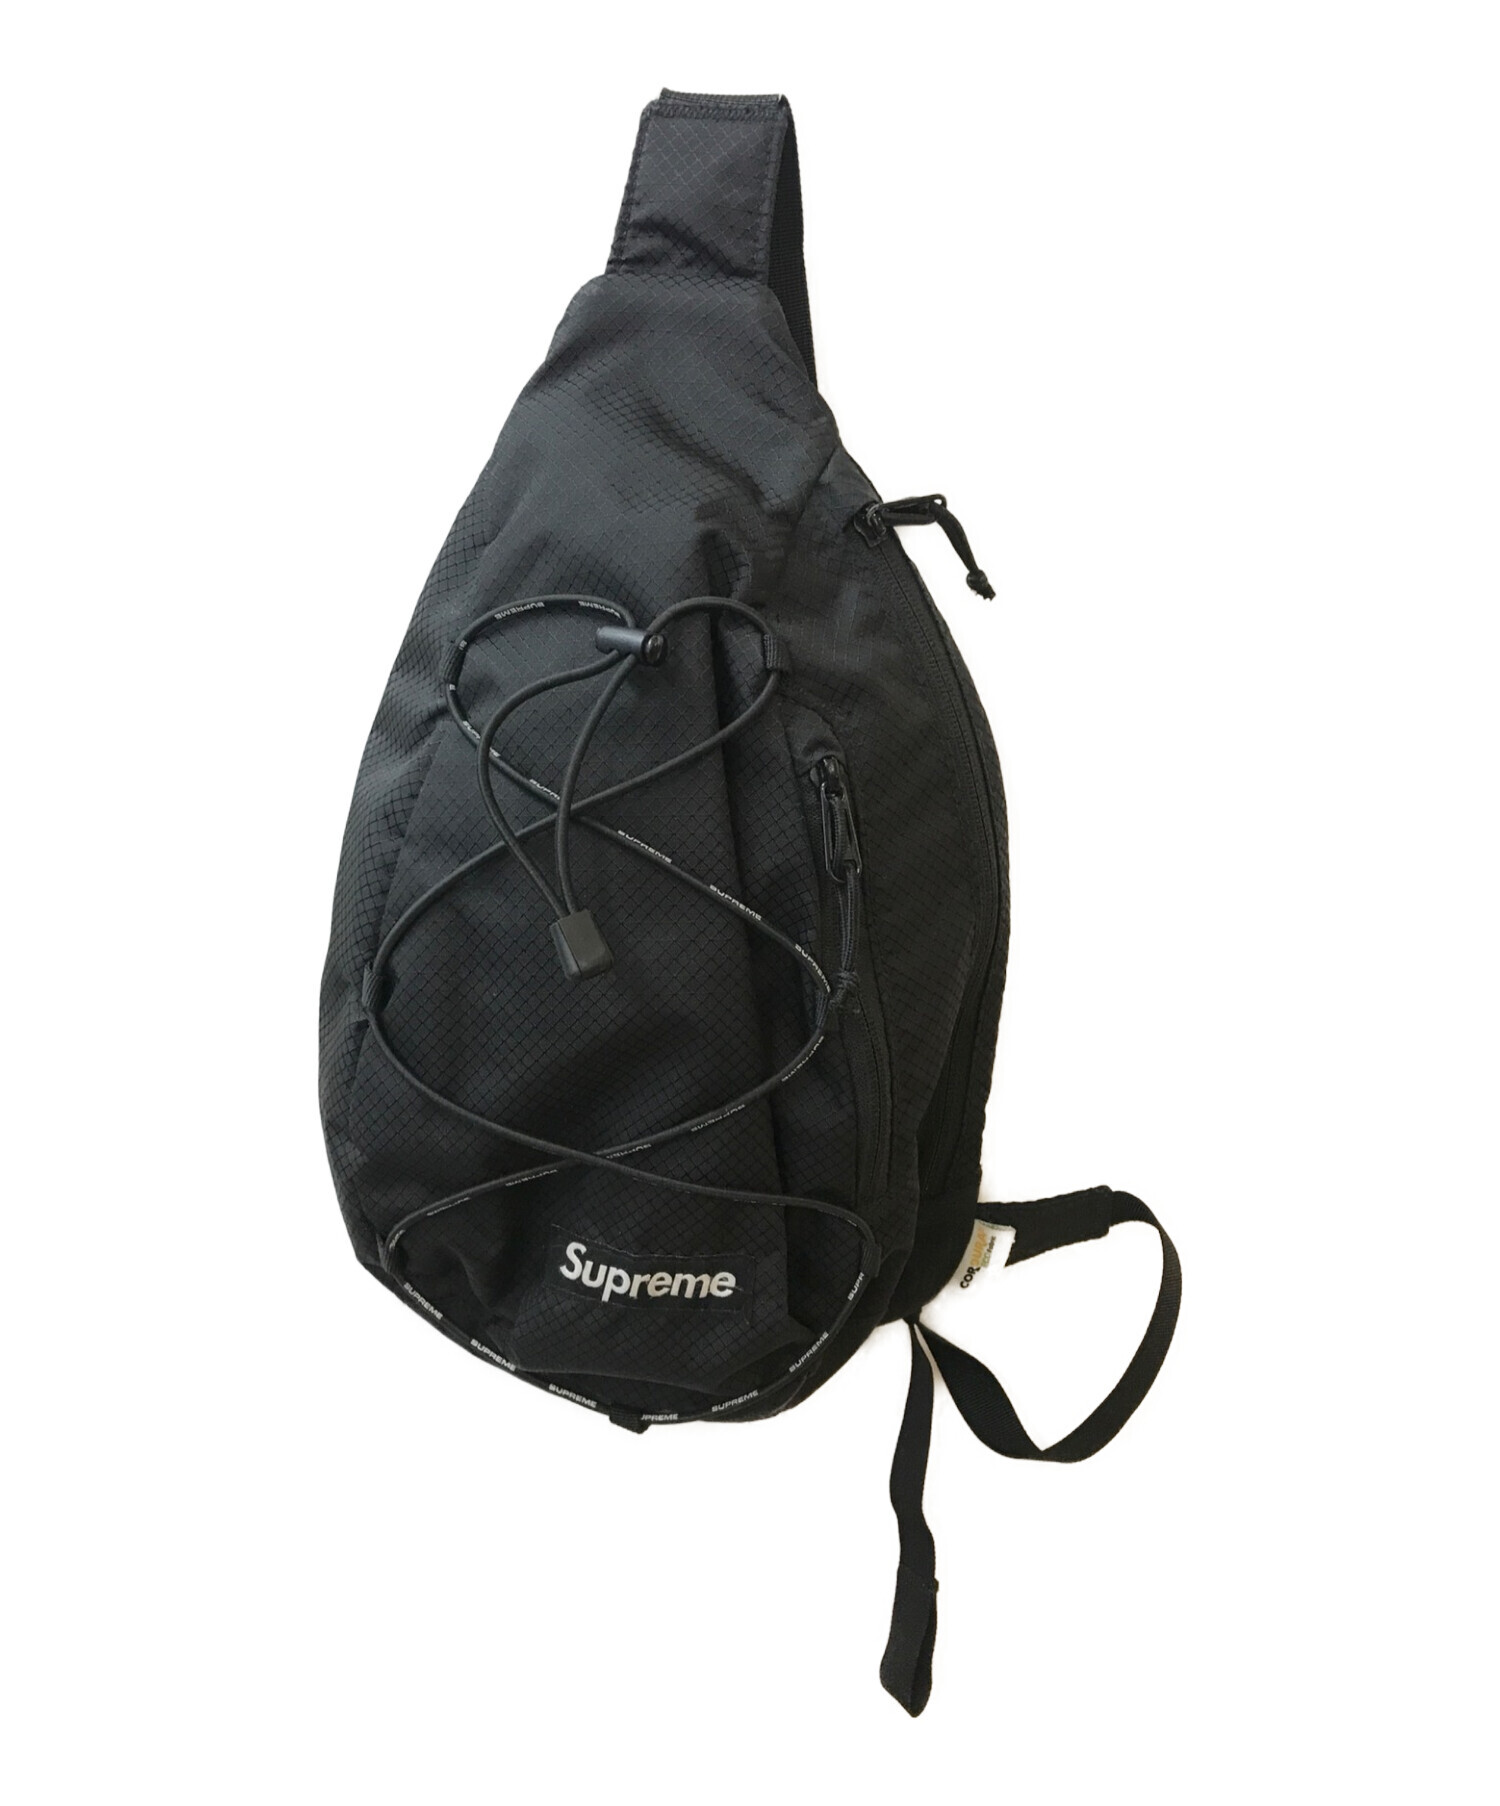 Supreme sling bag black 20fw